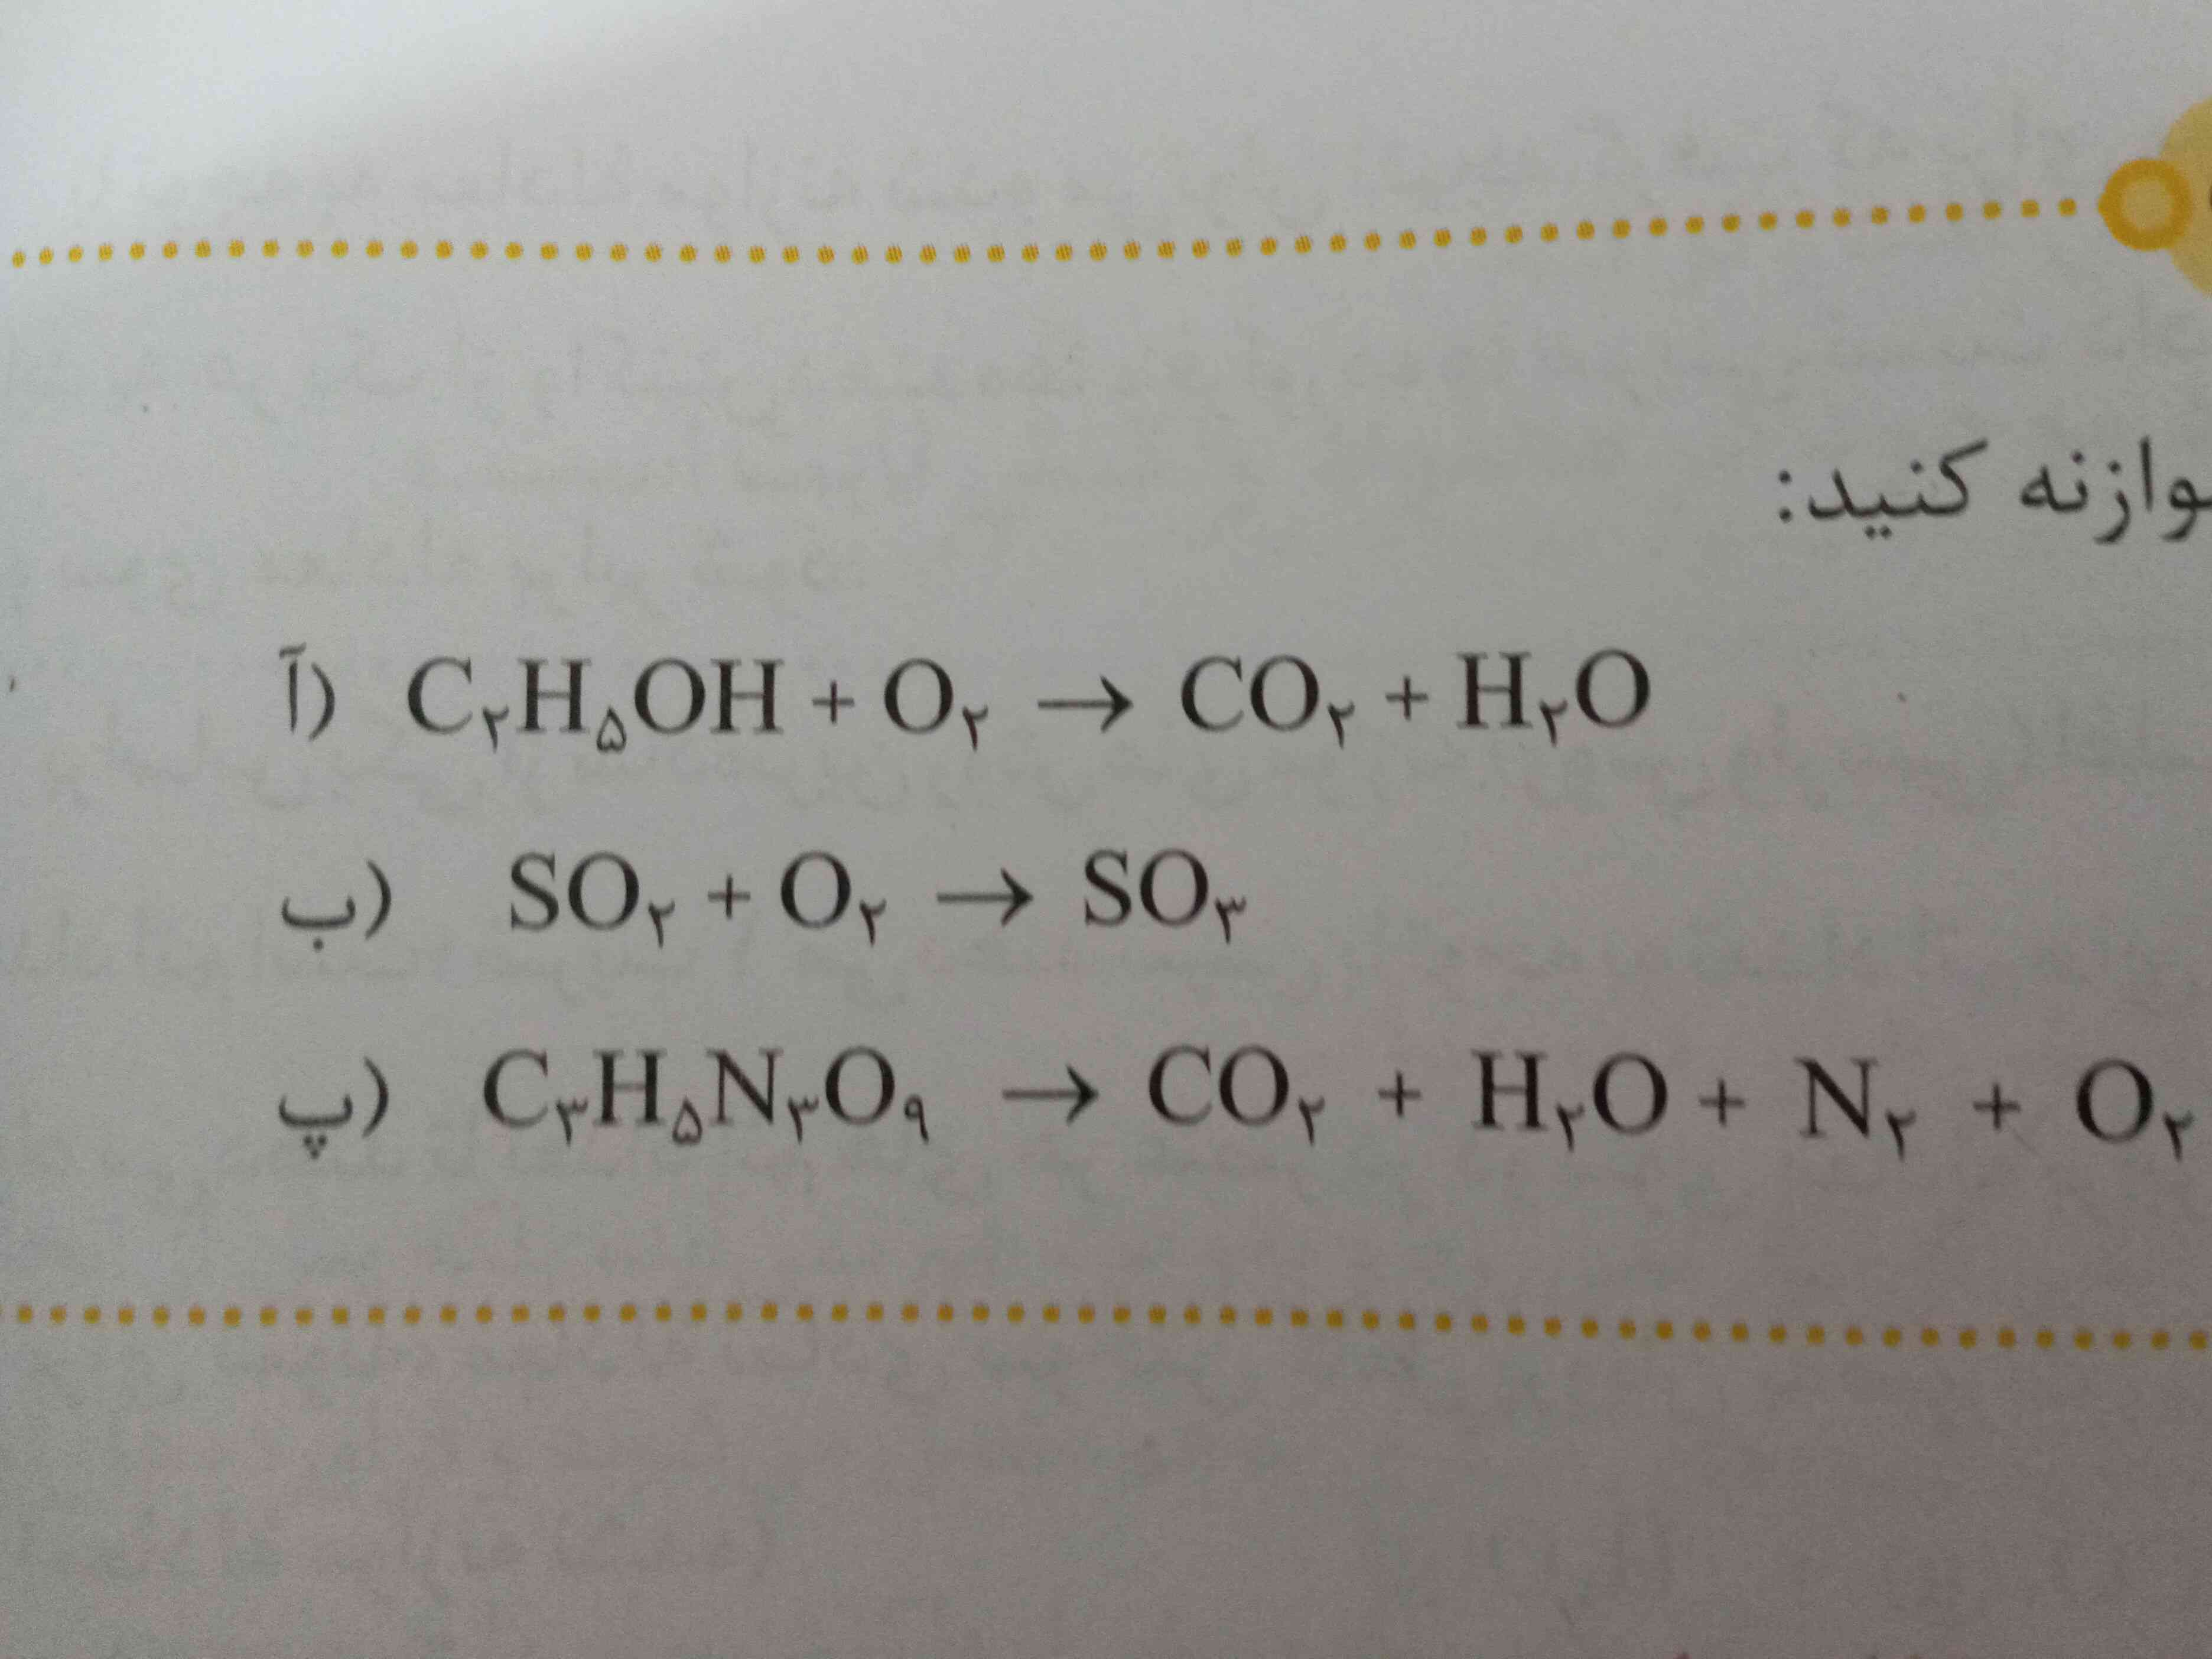 یه نفر لطفا صفحه ۶۴ شیمی خودرابیازمایید رو با توضیح کامل بهم بگه لطفا